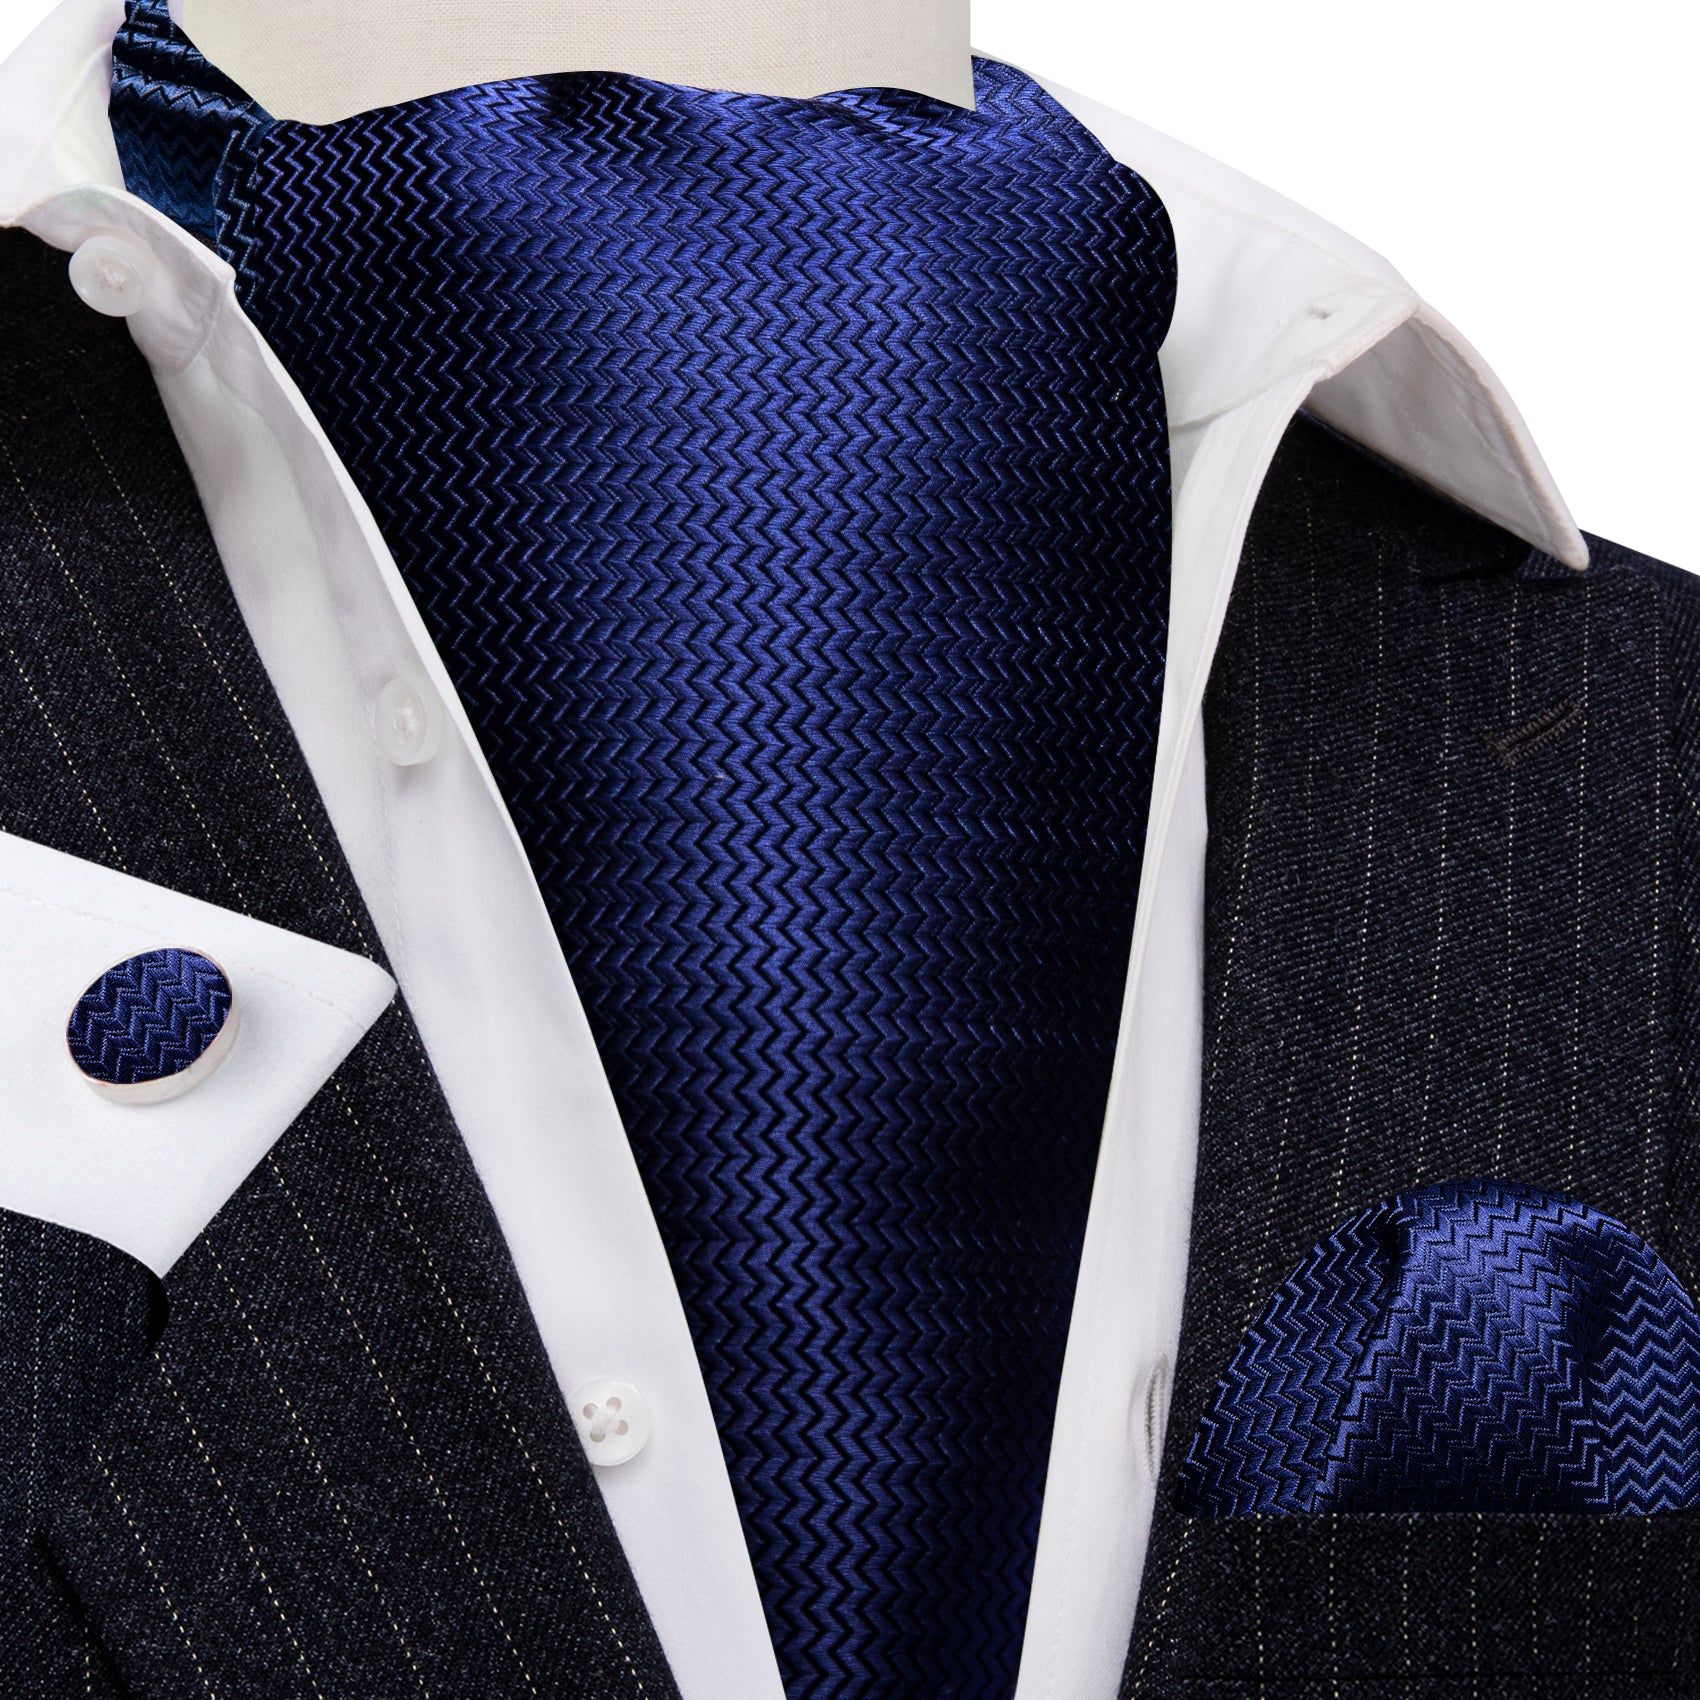 Blue Solid Silk Ascot Handkerchief Cufflinks